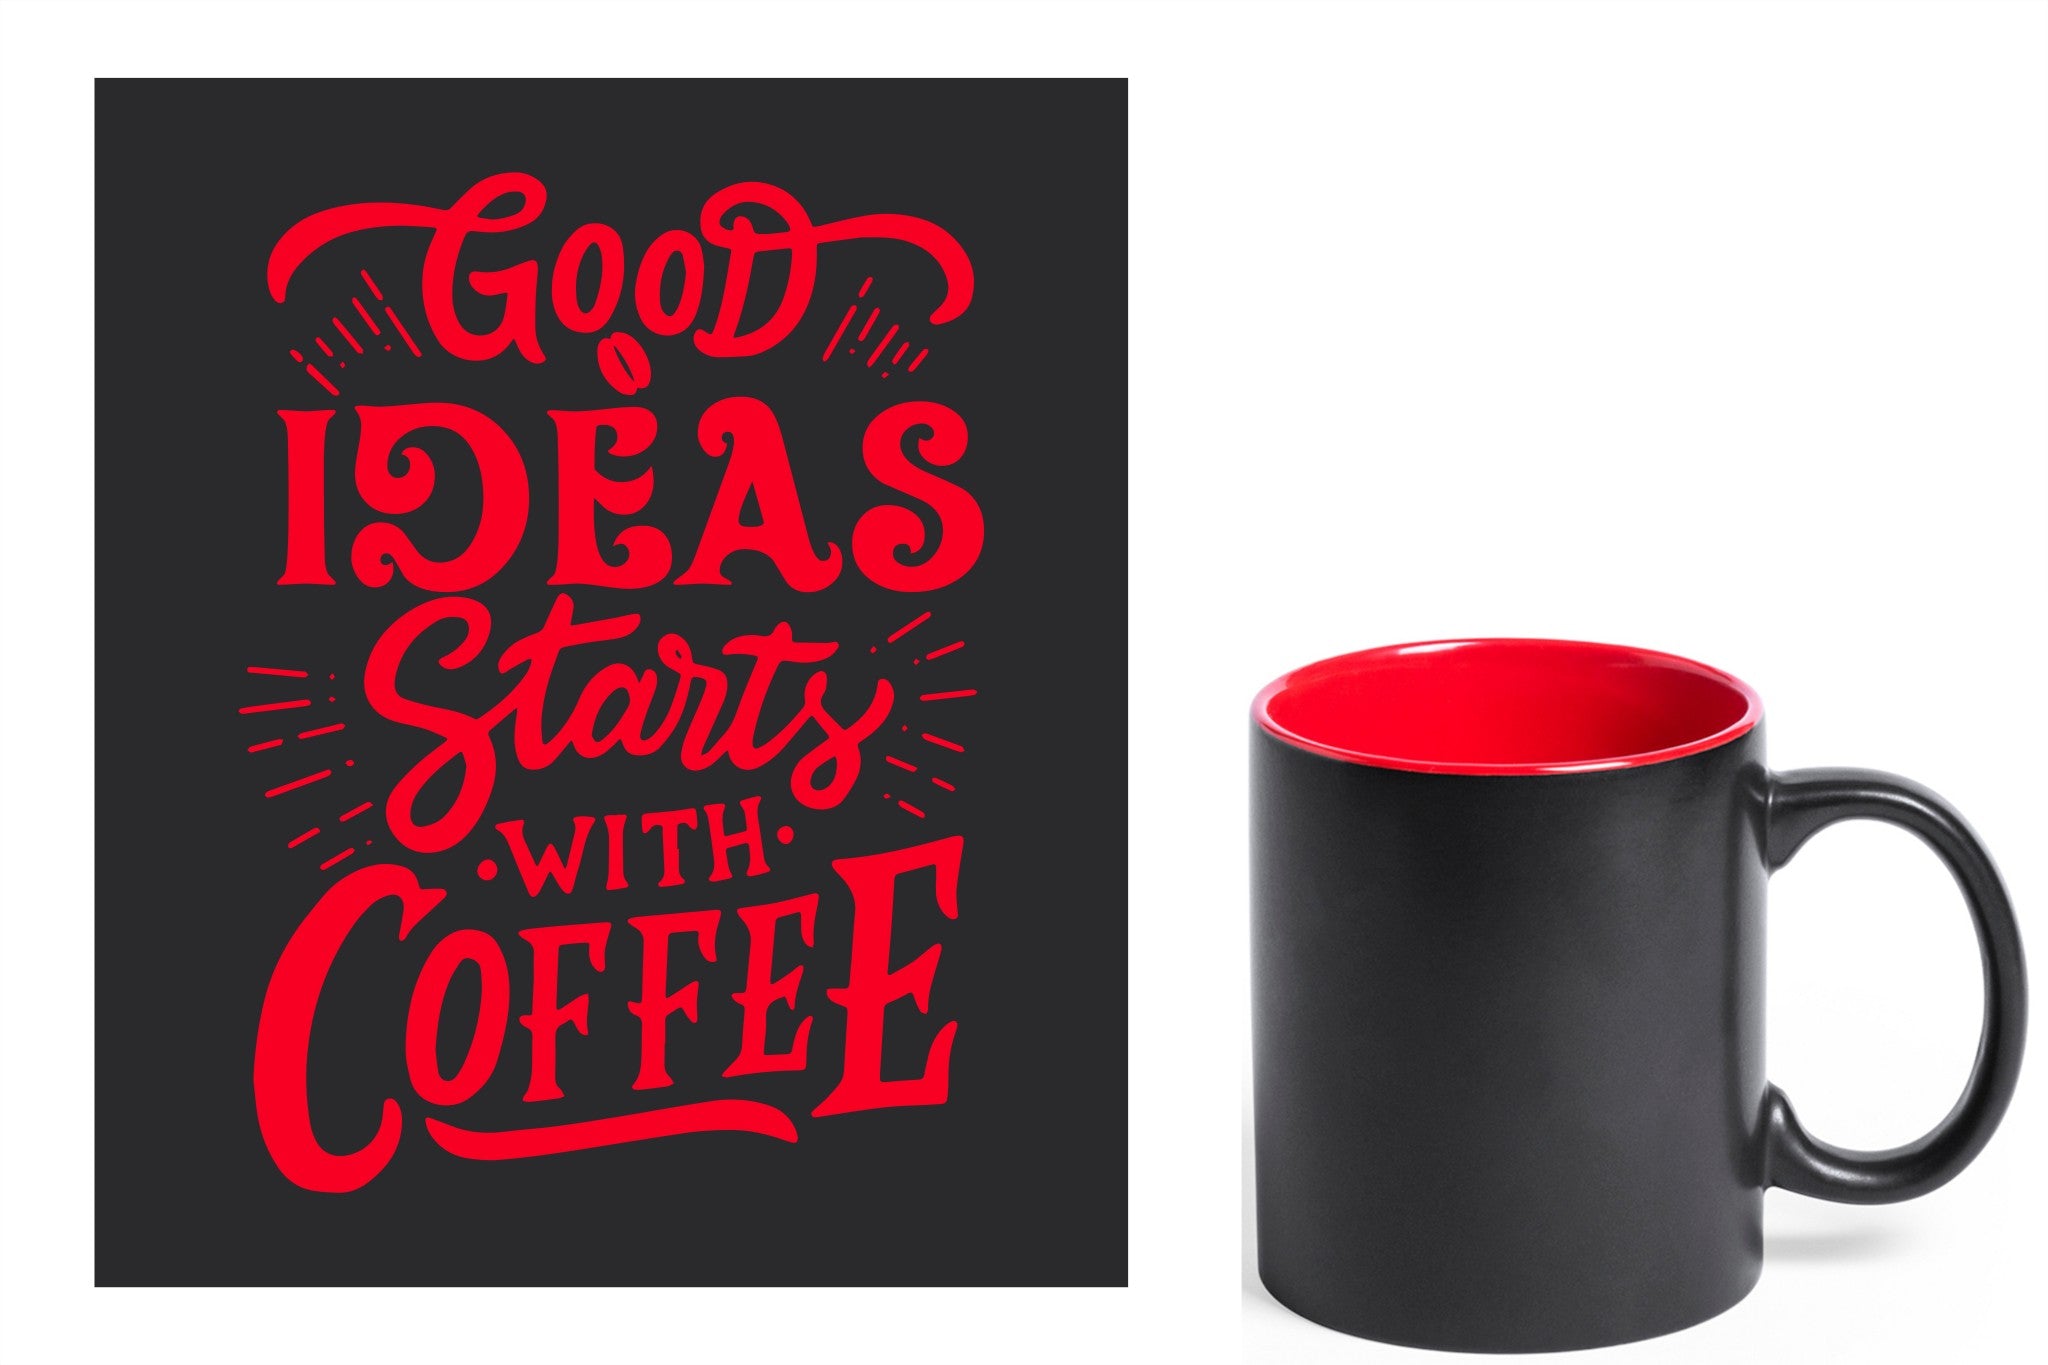 zwarte keramische mok met rode gravure  'Good ideas starts with coffee'.